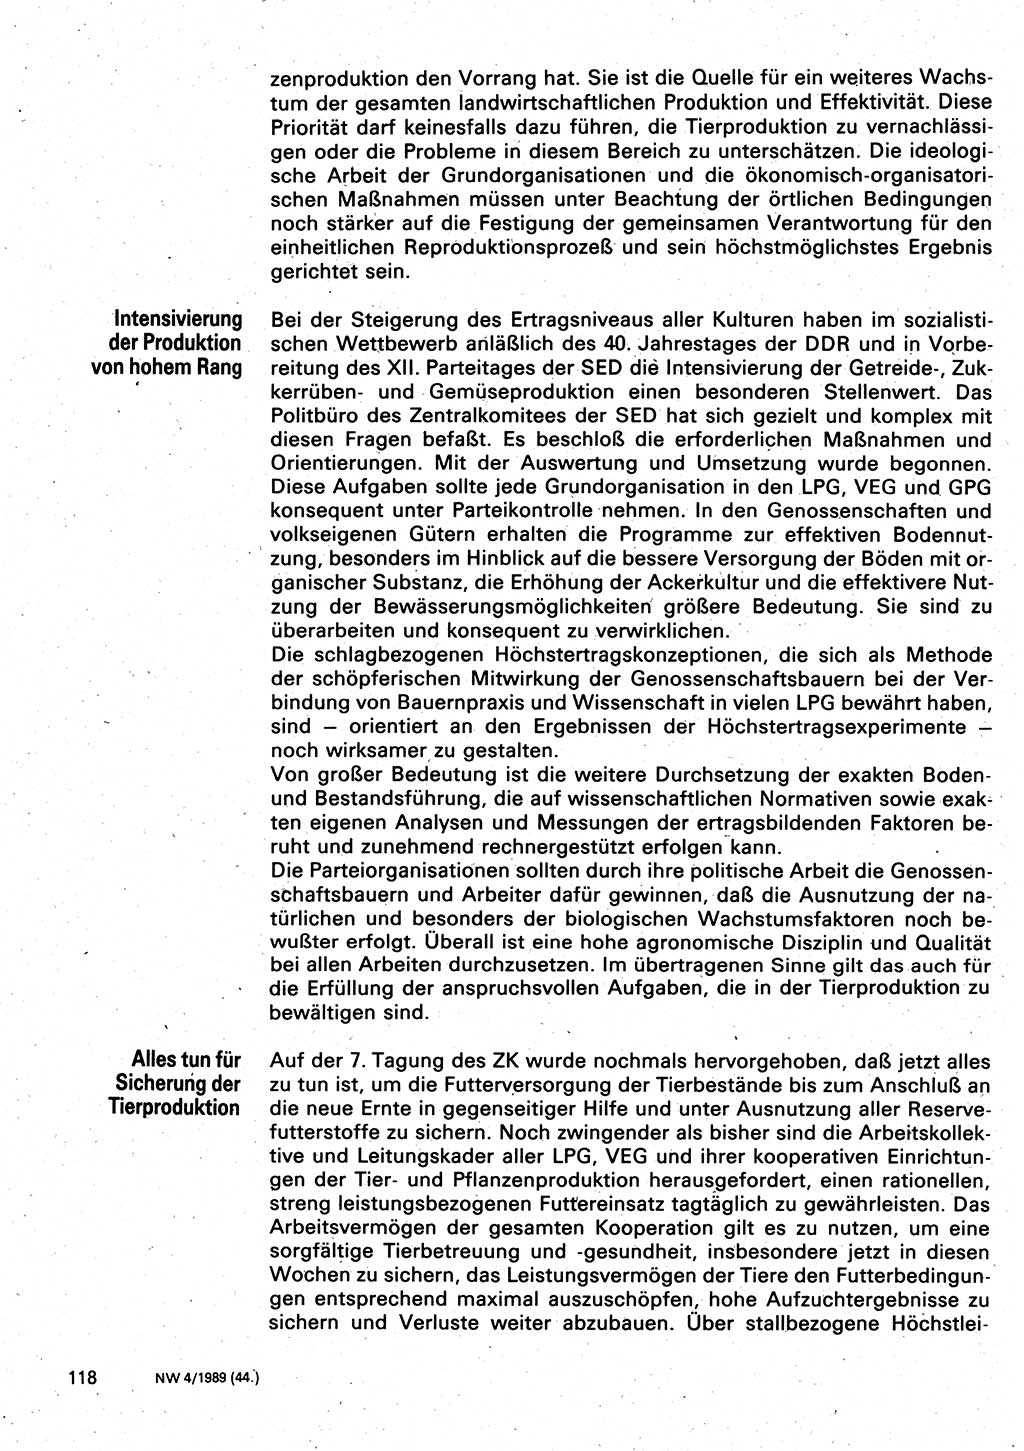 Neuer Weg (NW), Organ des Zentralkomitees (ZK) der SED (Sozialistische Einheitspartei Deutschlands) für Fragen des Parteilebens, 44. Jahrgang [Deutsche Demokratische Republik (DDR)] 1989, Seite 118 (NW ZK SED DDR 1989, S. 118)